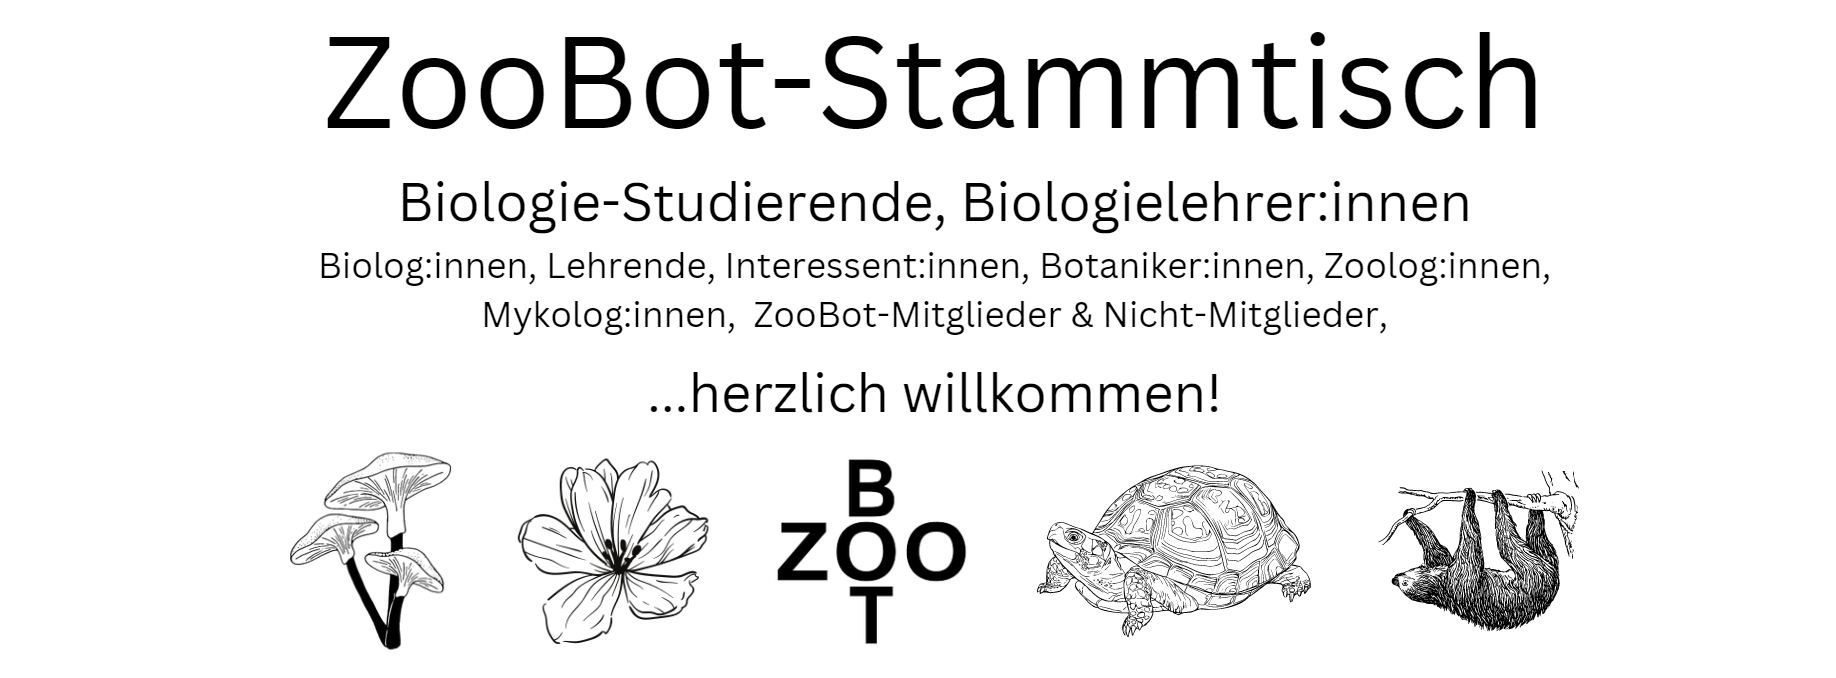 Wiener ZooBot-Stammtisch am 14.06.23